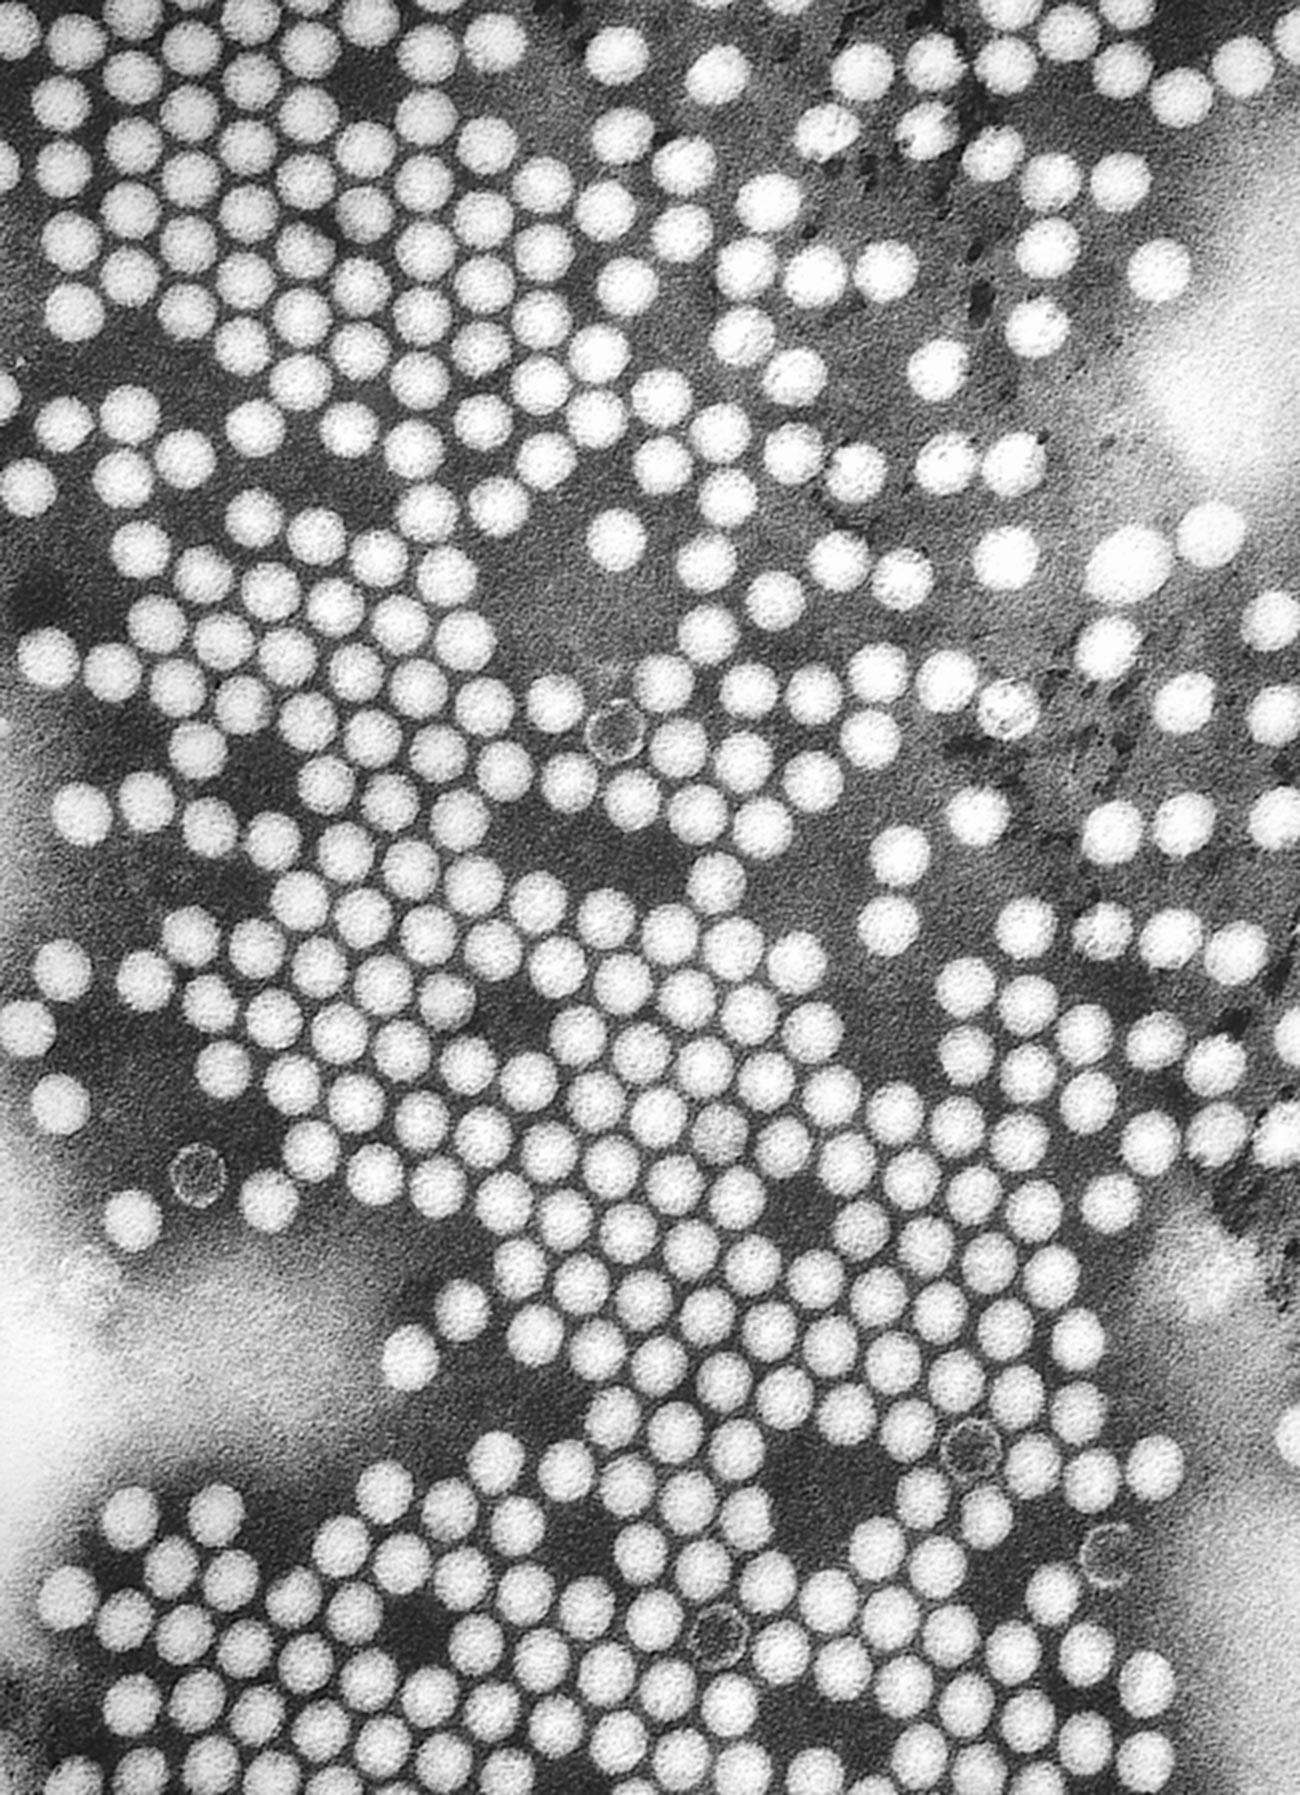 Micrographie électronique du virus de la poliomyélite